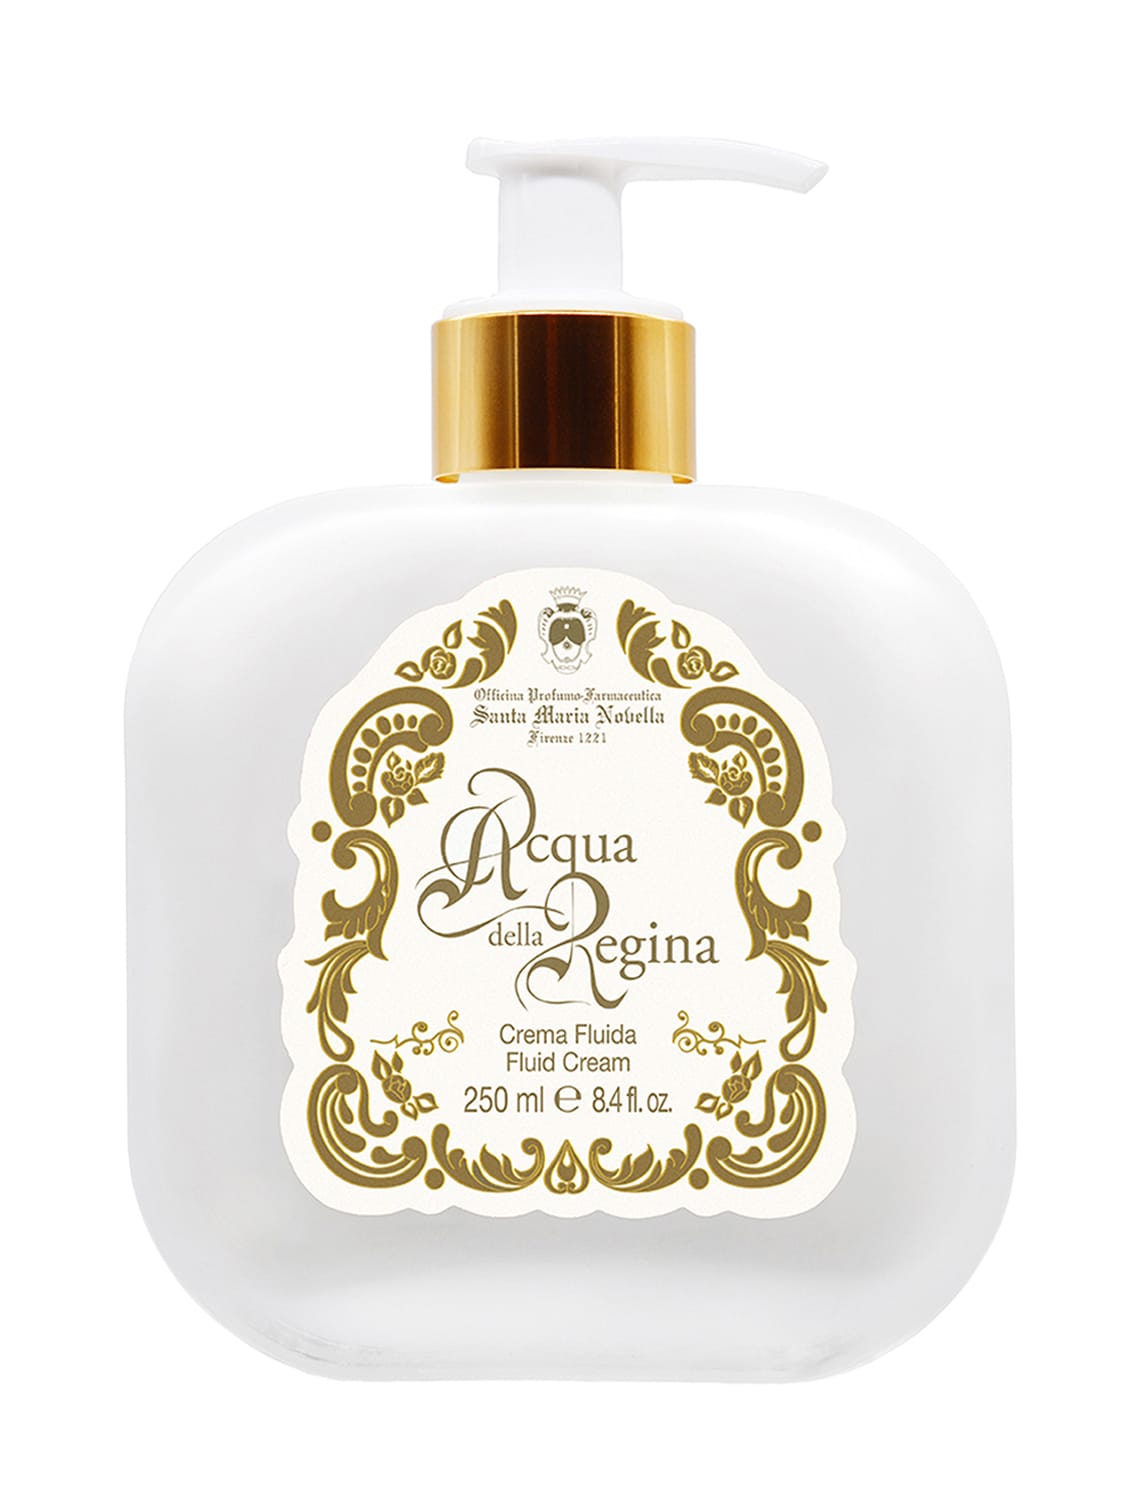 250ml Acqua Della Regina Fluid Cream – BEAUTY – WOMEN > BATH & BODY > BODY LOTION